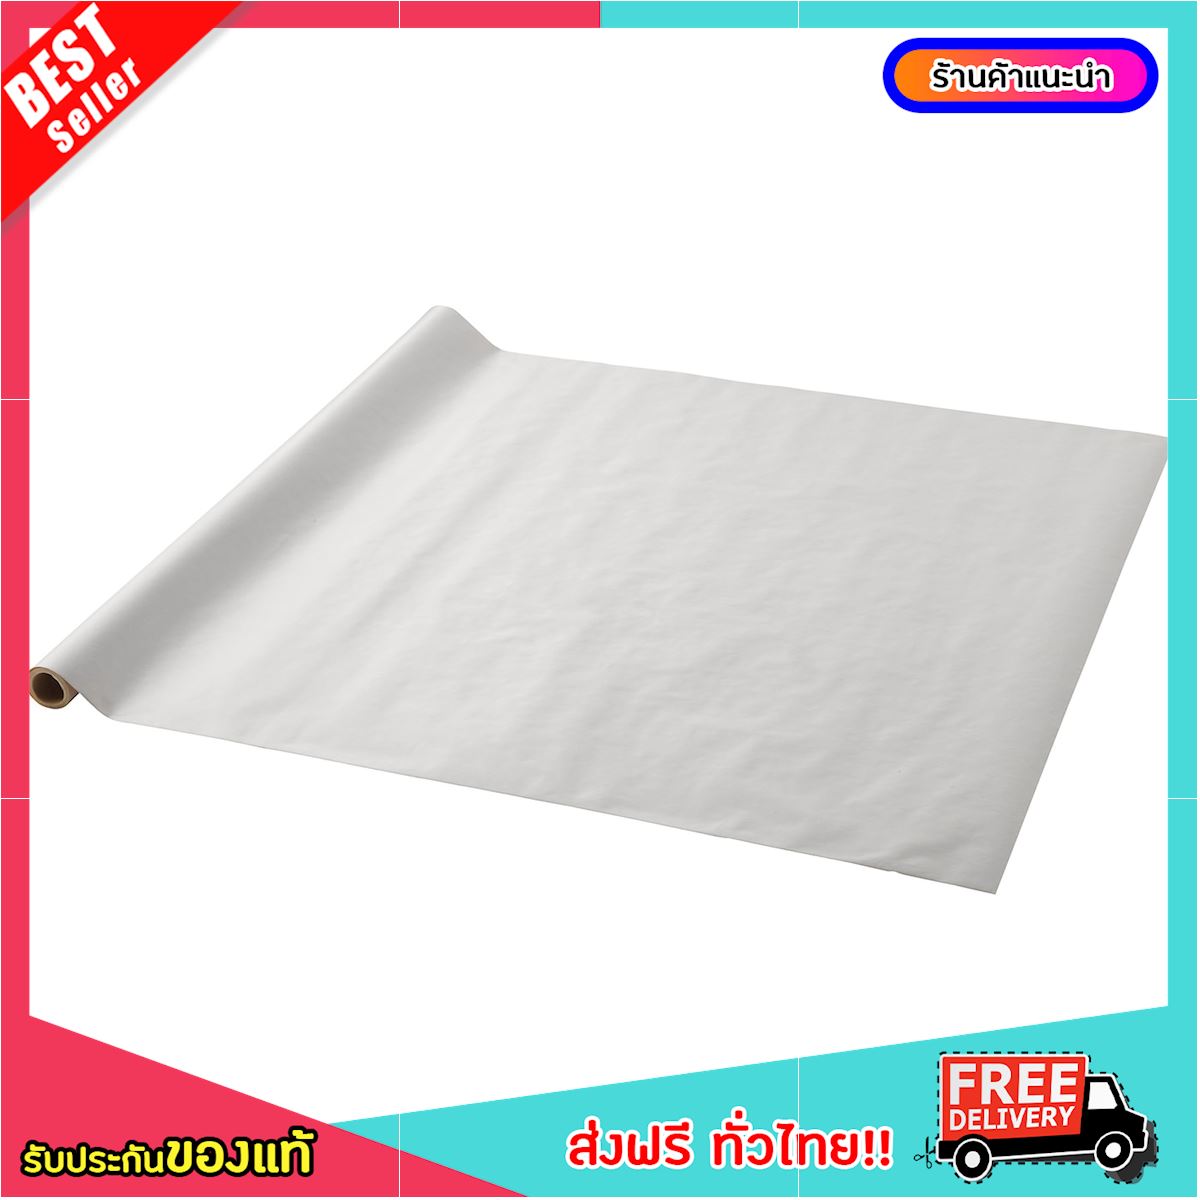 [ซื้อ 1 แถม 1 ฟรี] กระดาษห่อของ กระดาษสีขาว กระดาษห่อของขวัญ, ขาว, 5x0.7 ม. [จัดส่งฟรี!]